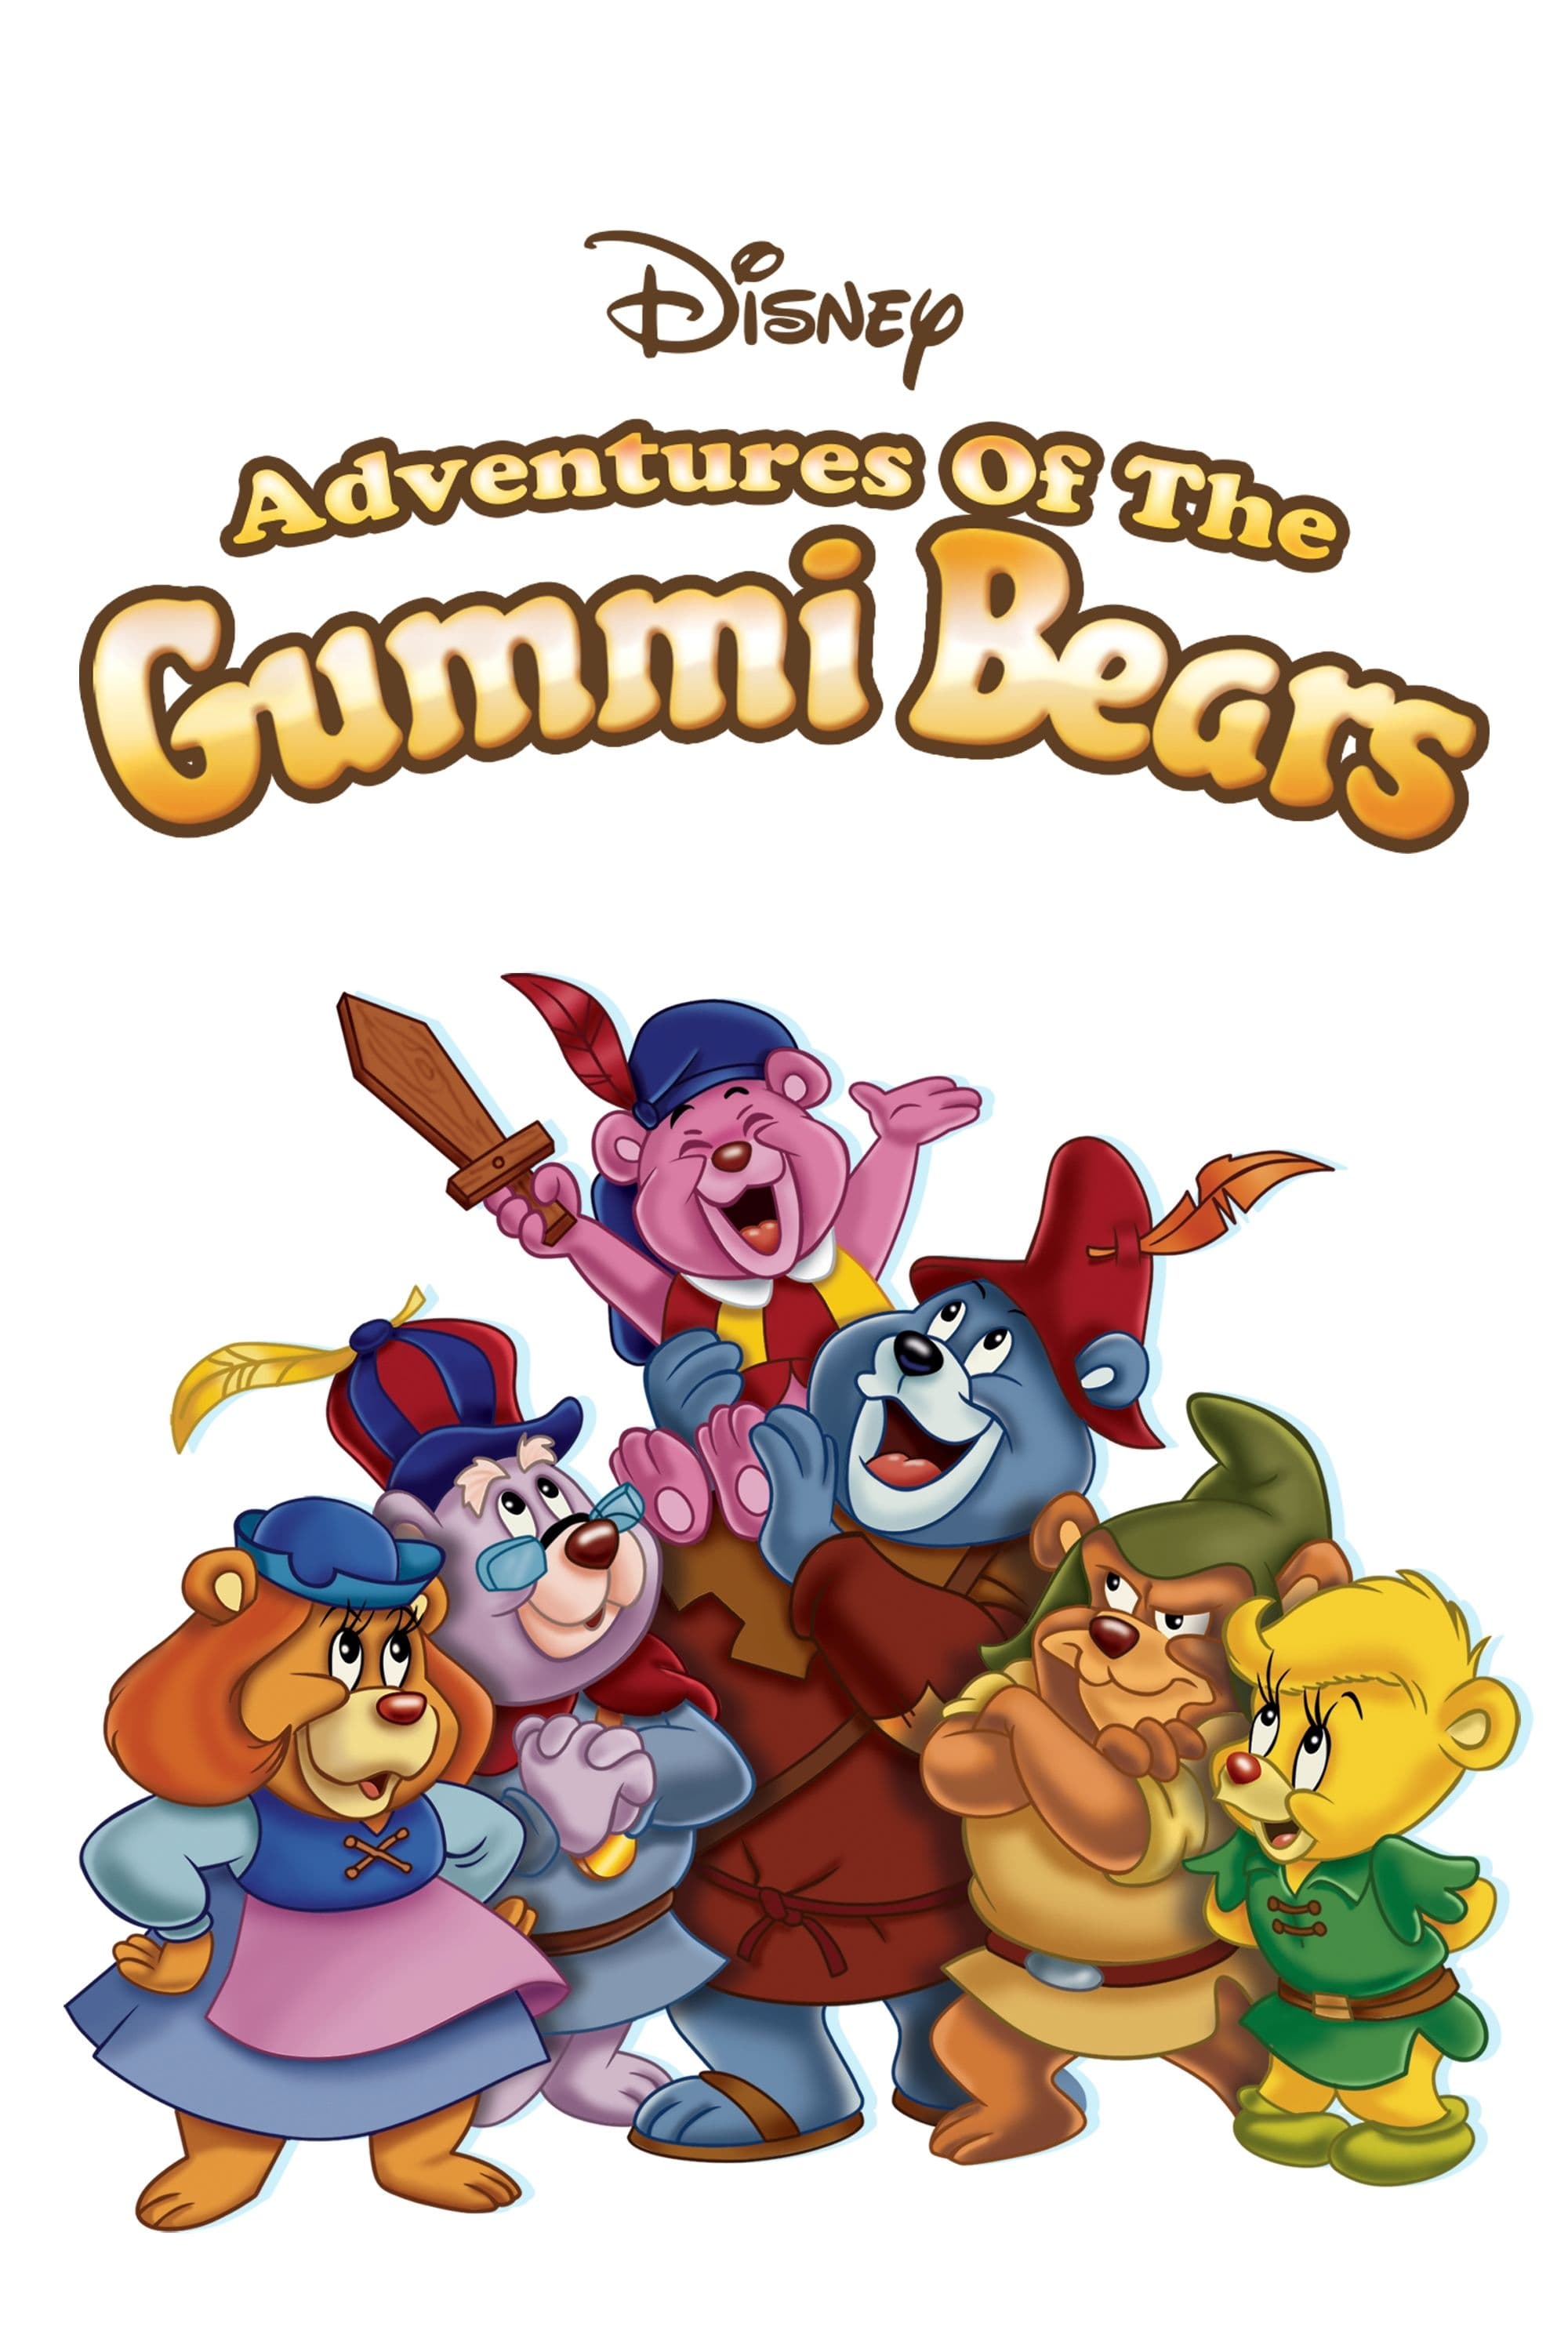 Disney's Adventures of the Gummi Bears (1985)